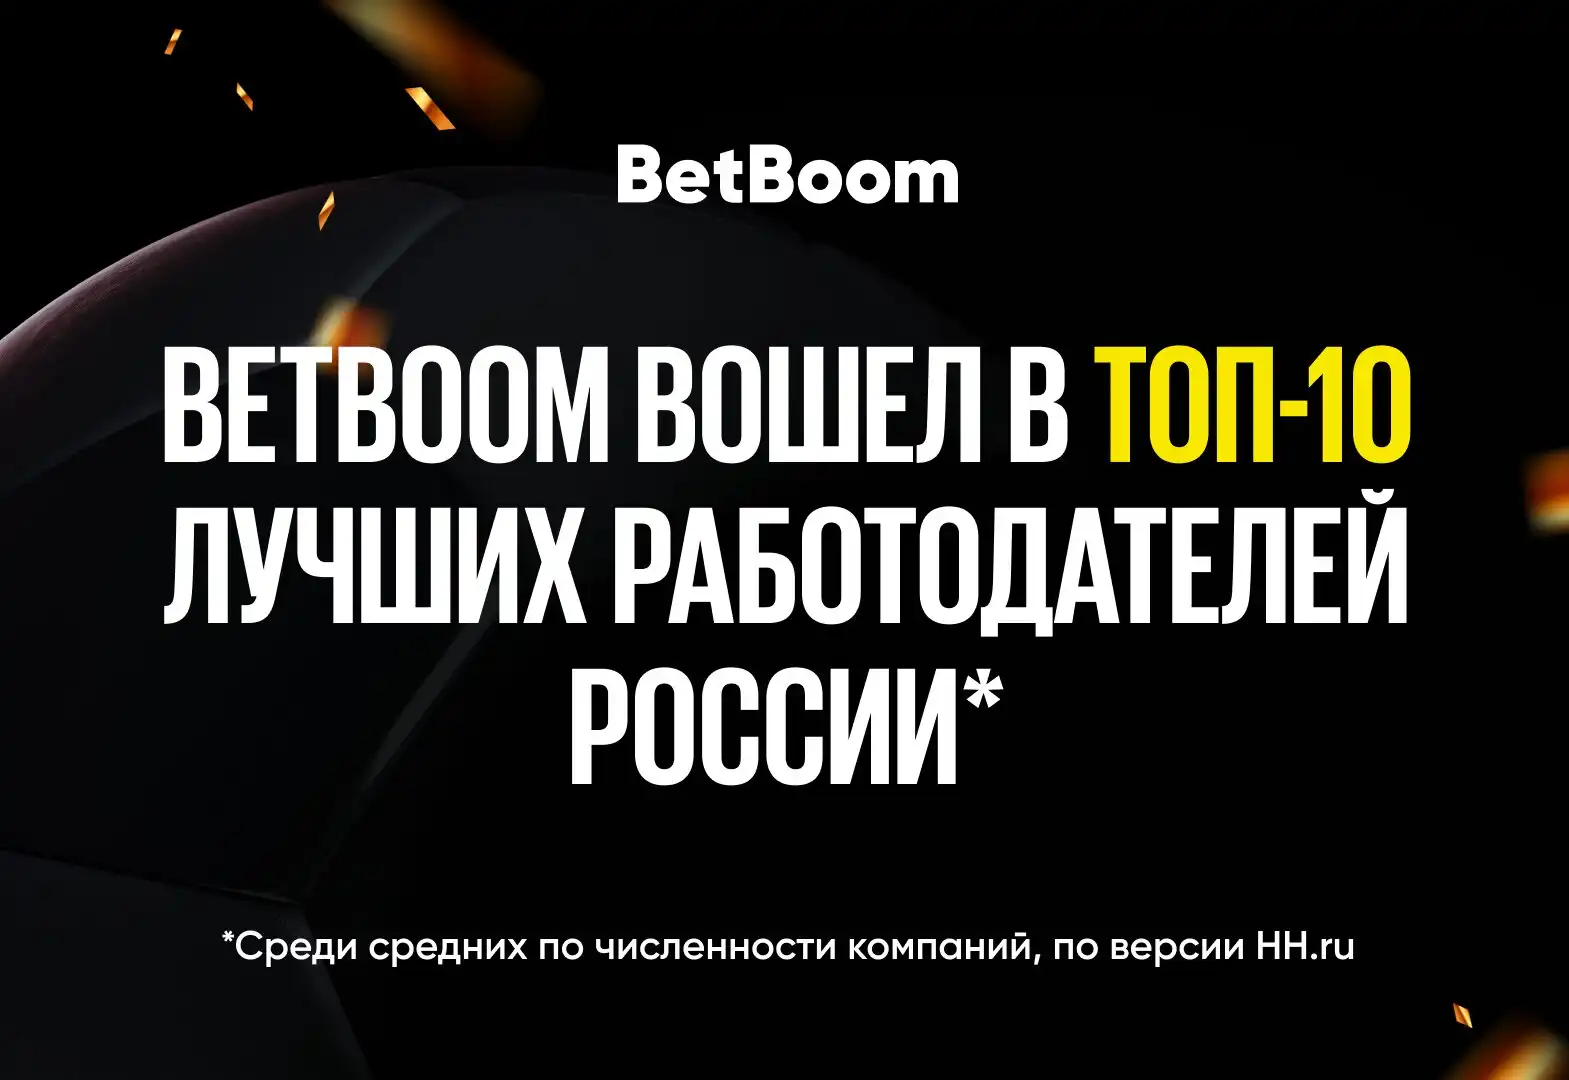 BetBoom попал в ТОП-10 работодателей по версии HH.ru